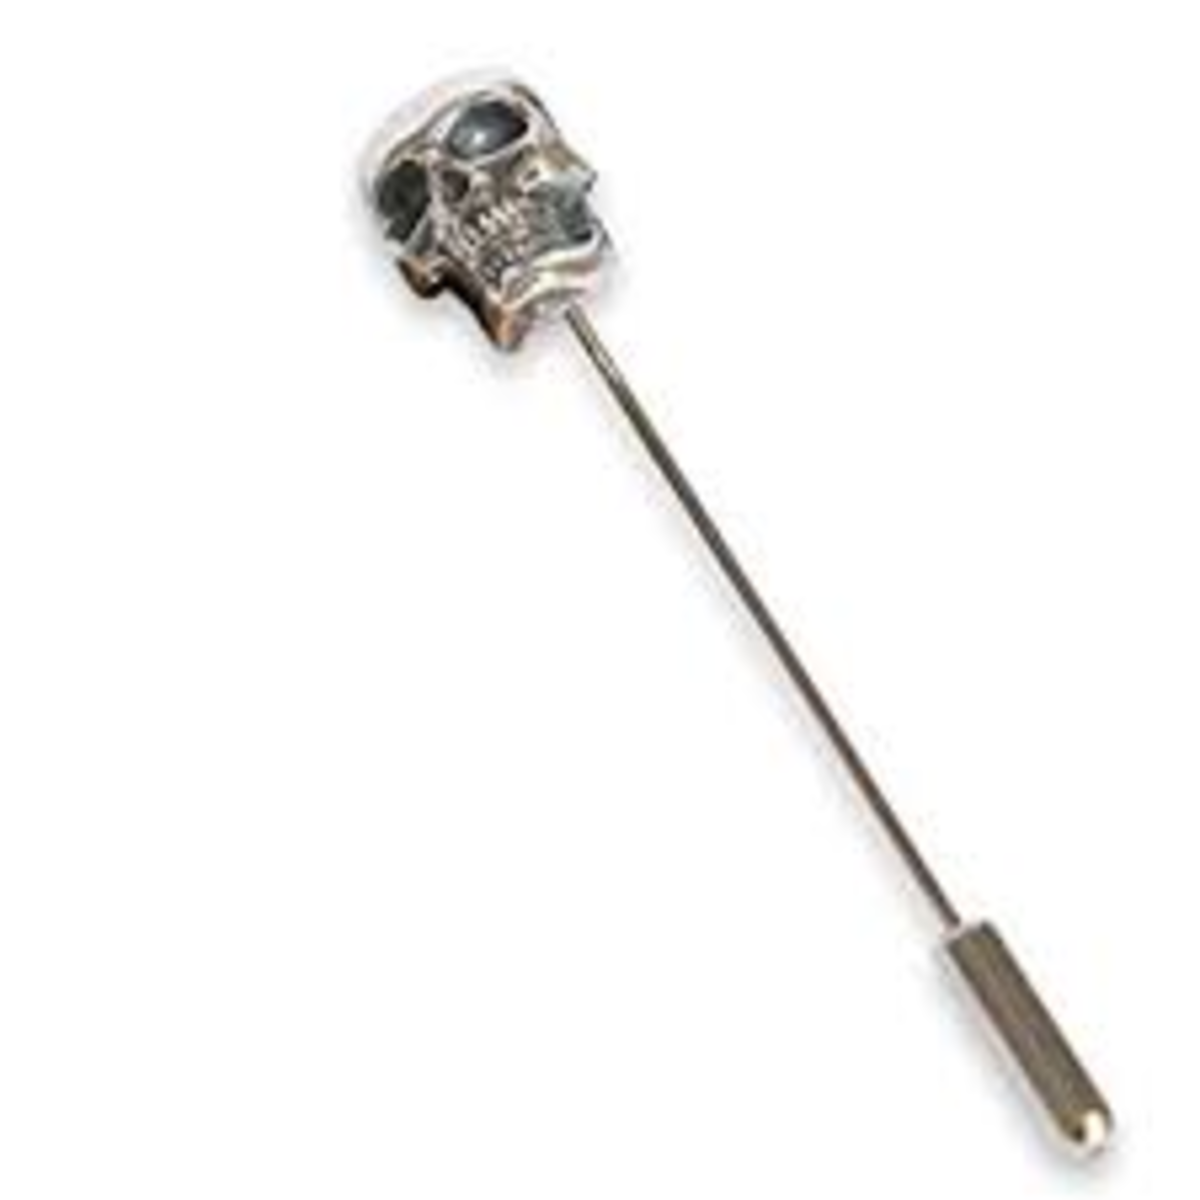 Human Skull stick pin.